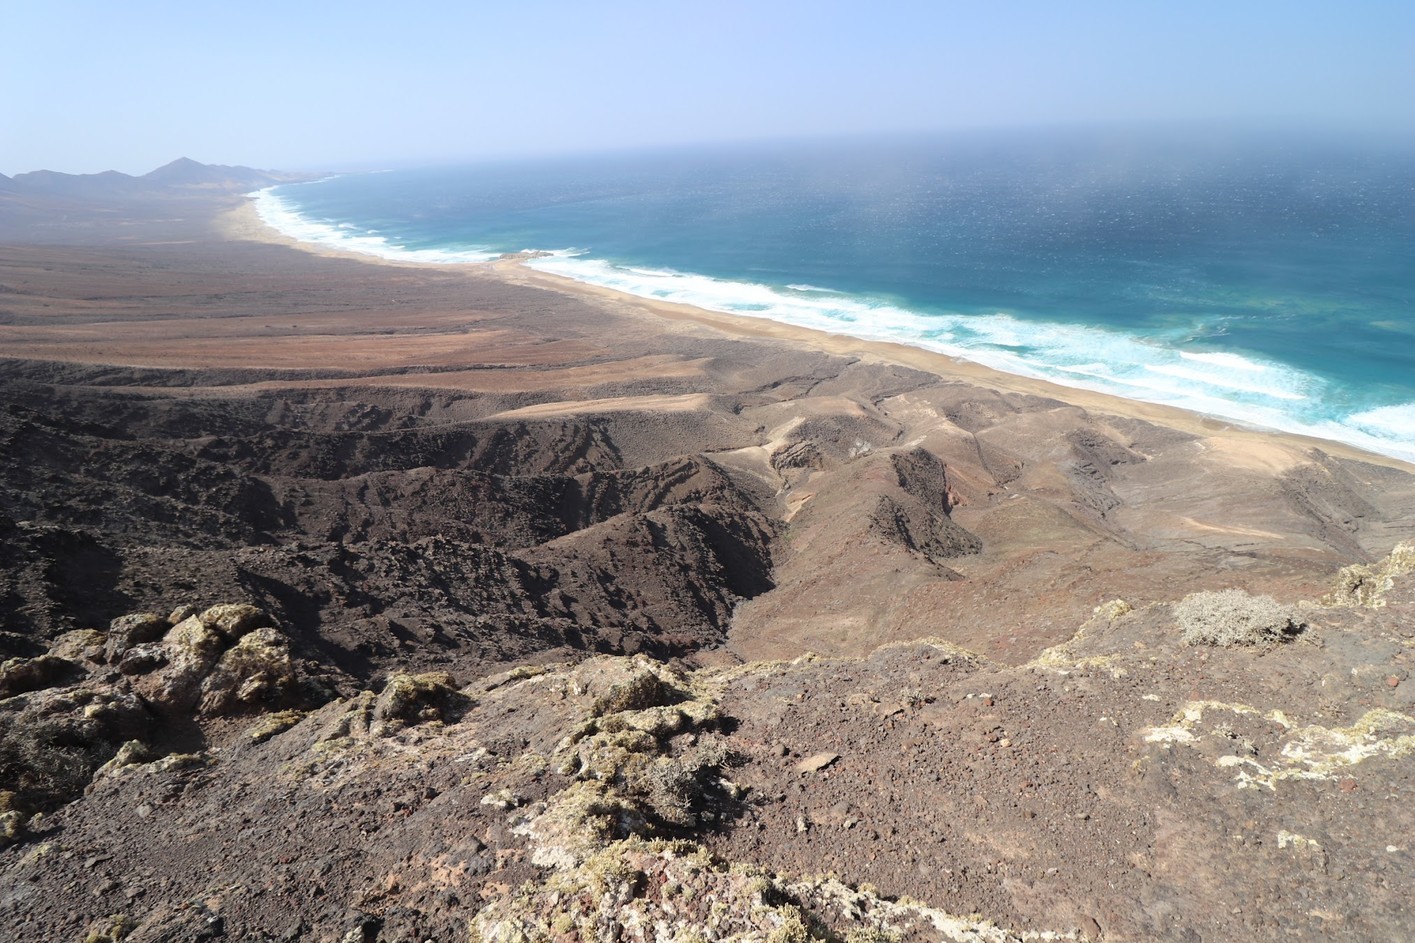 Mirador de los Canarios is another viewpoint you should visit in Cofete Fuerteventura